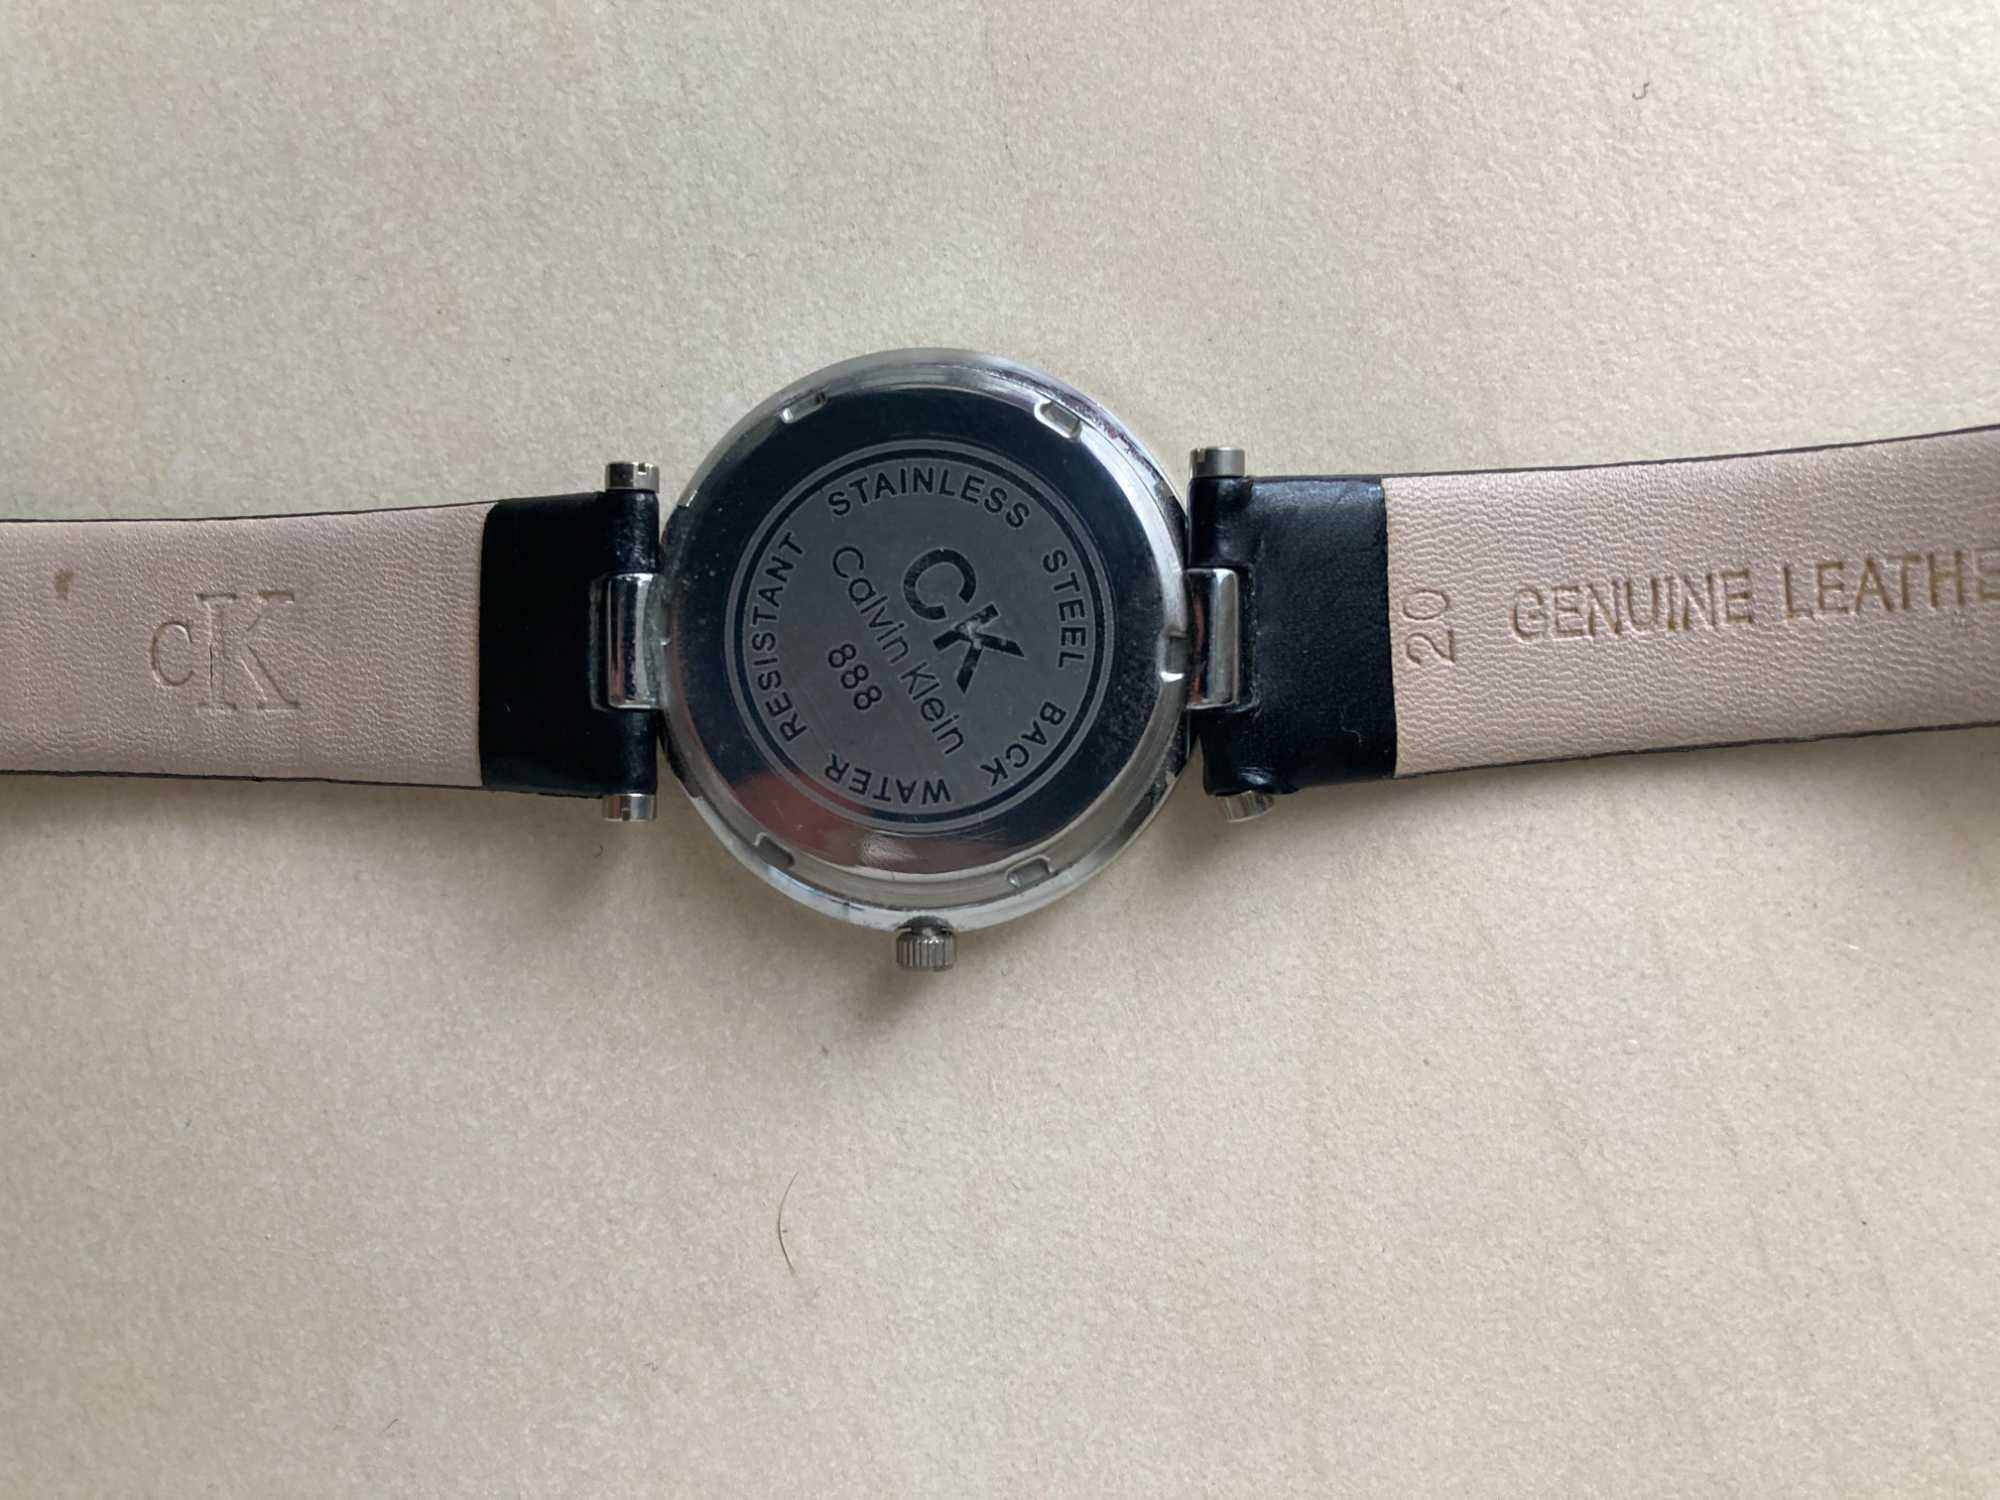 часы Calvin Klein